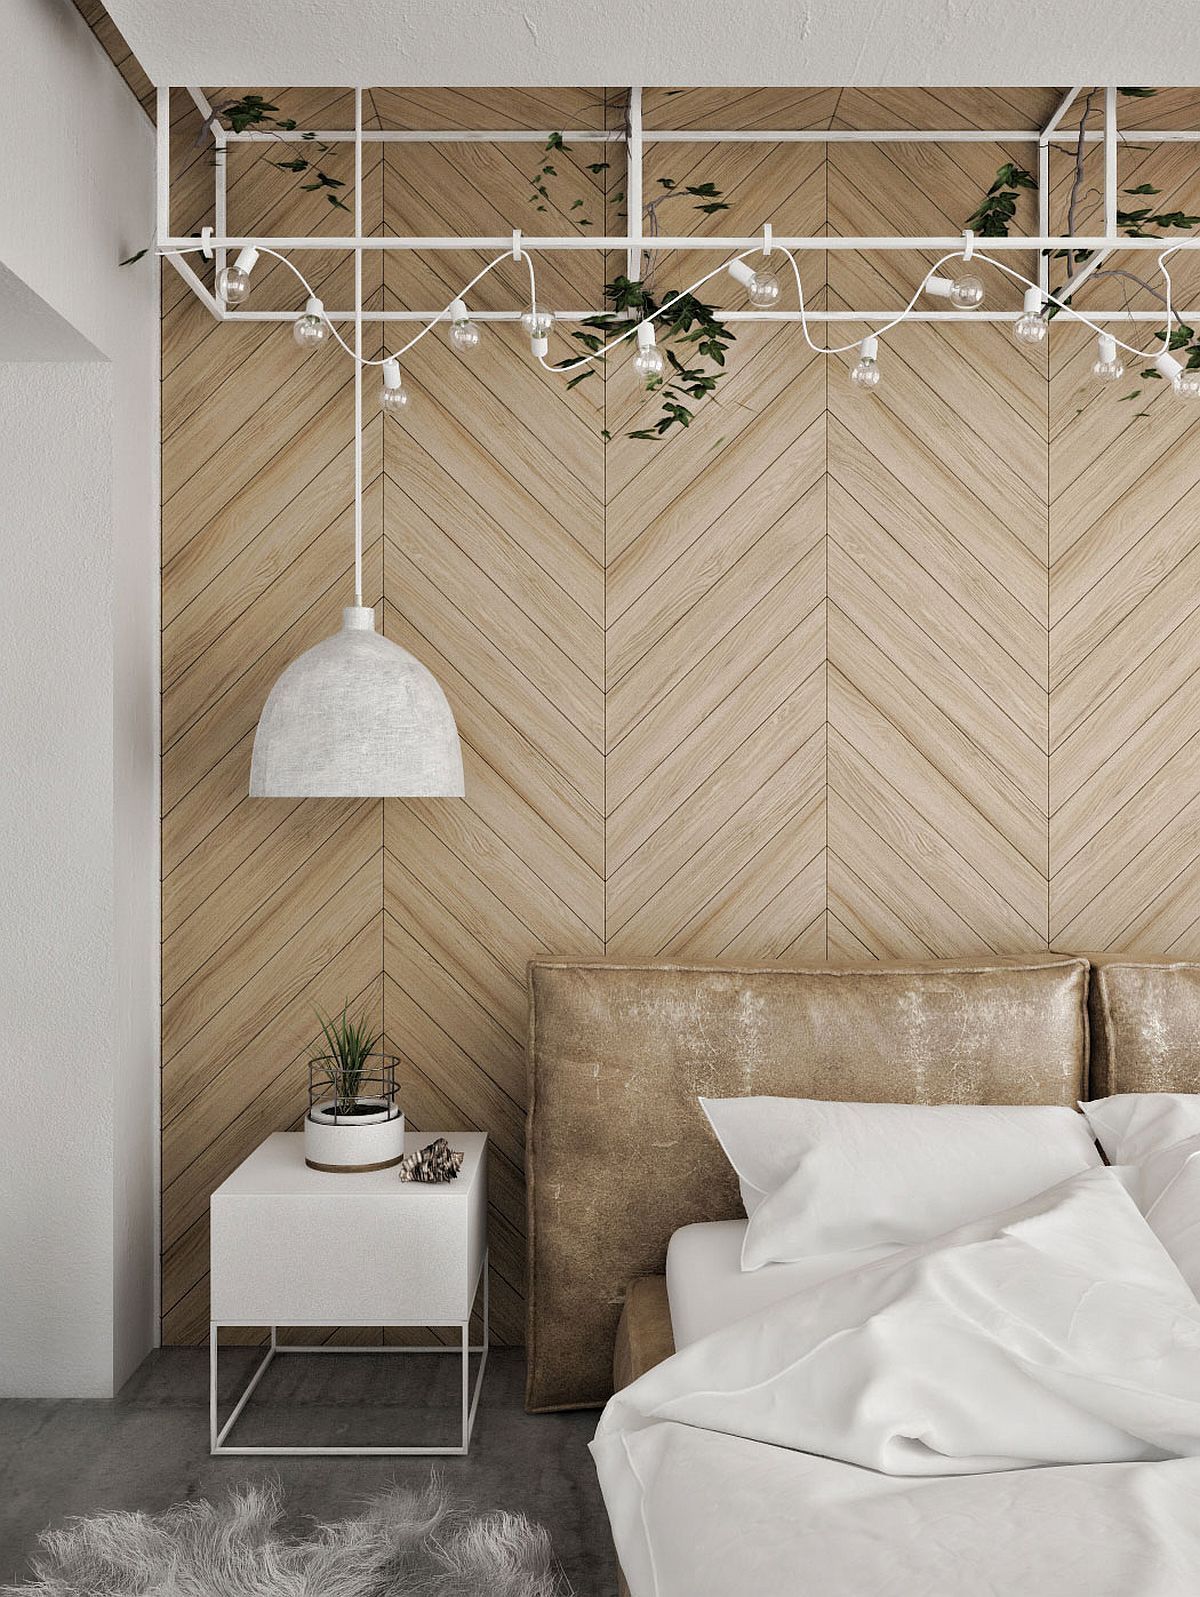  Tường phòng ngủ ốp gỗ hình xương cá với kích thước trung bình, màu sắc tương sáng cho không gian xinh xắn một cách rất nhẹ nhàng và gần gũi.